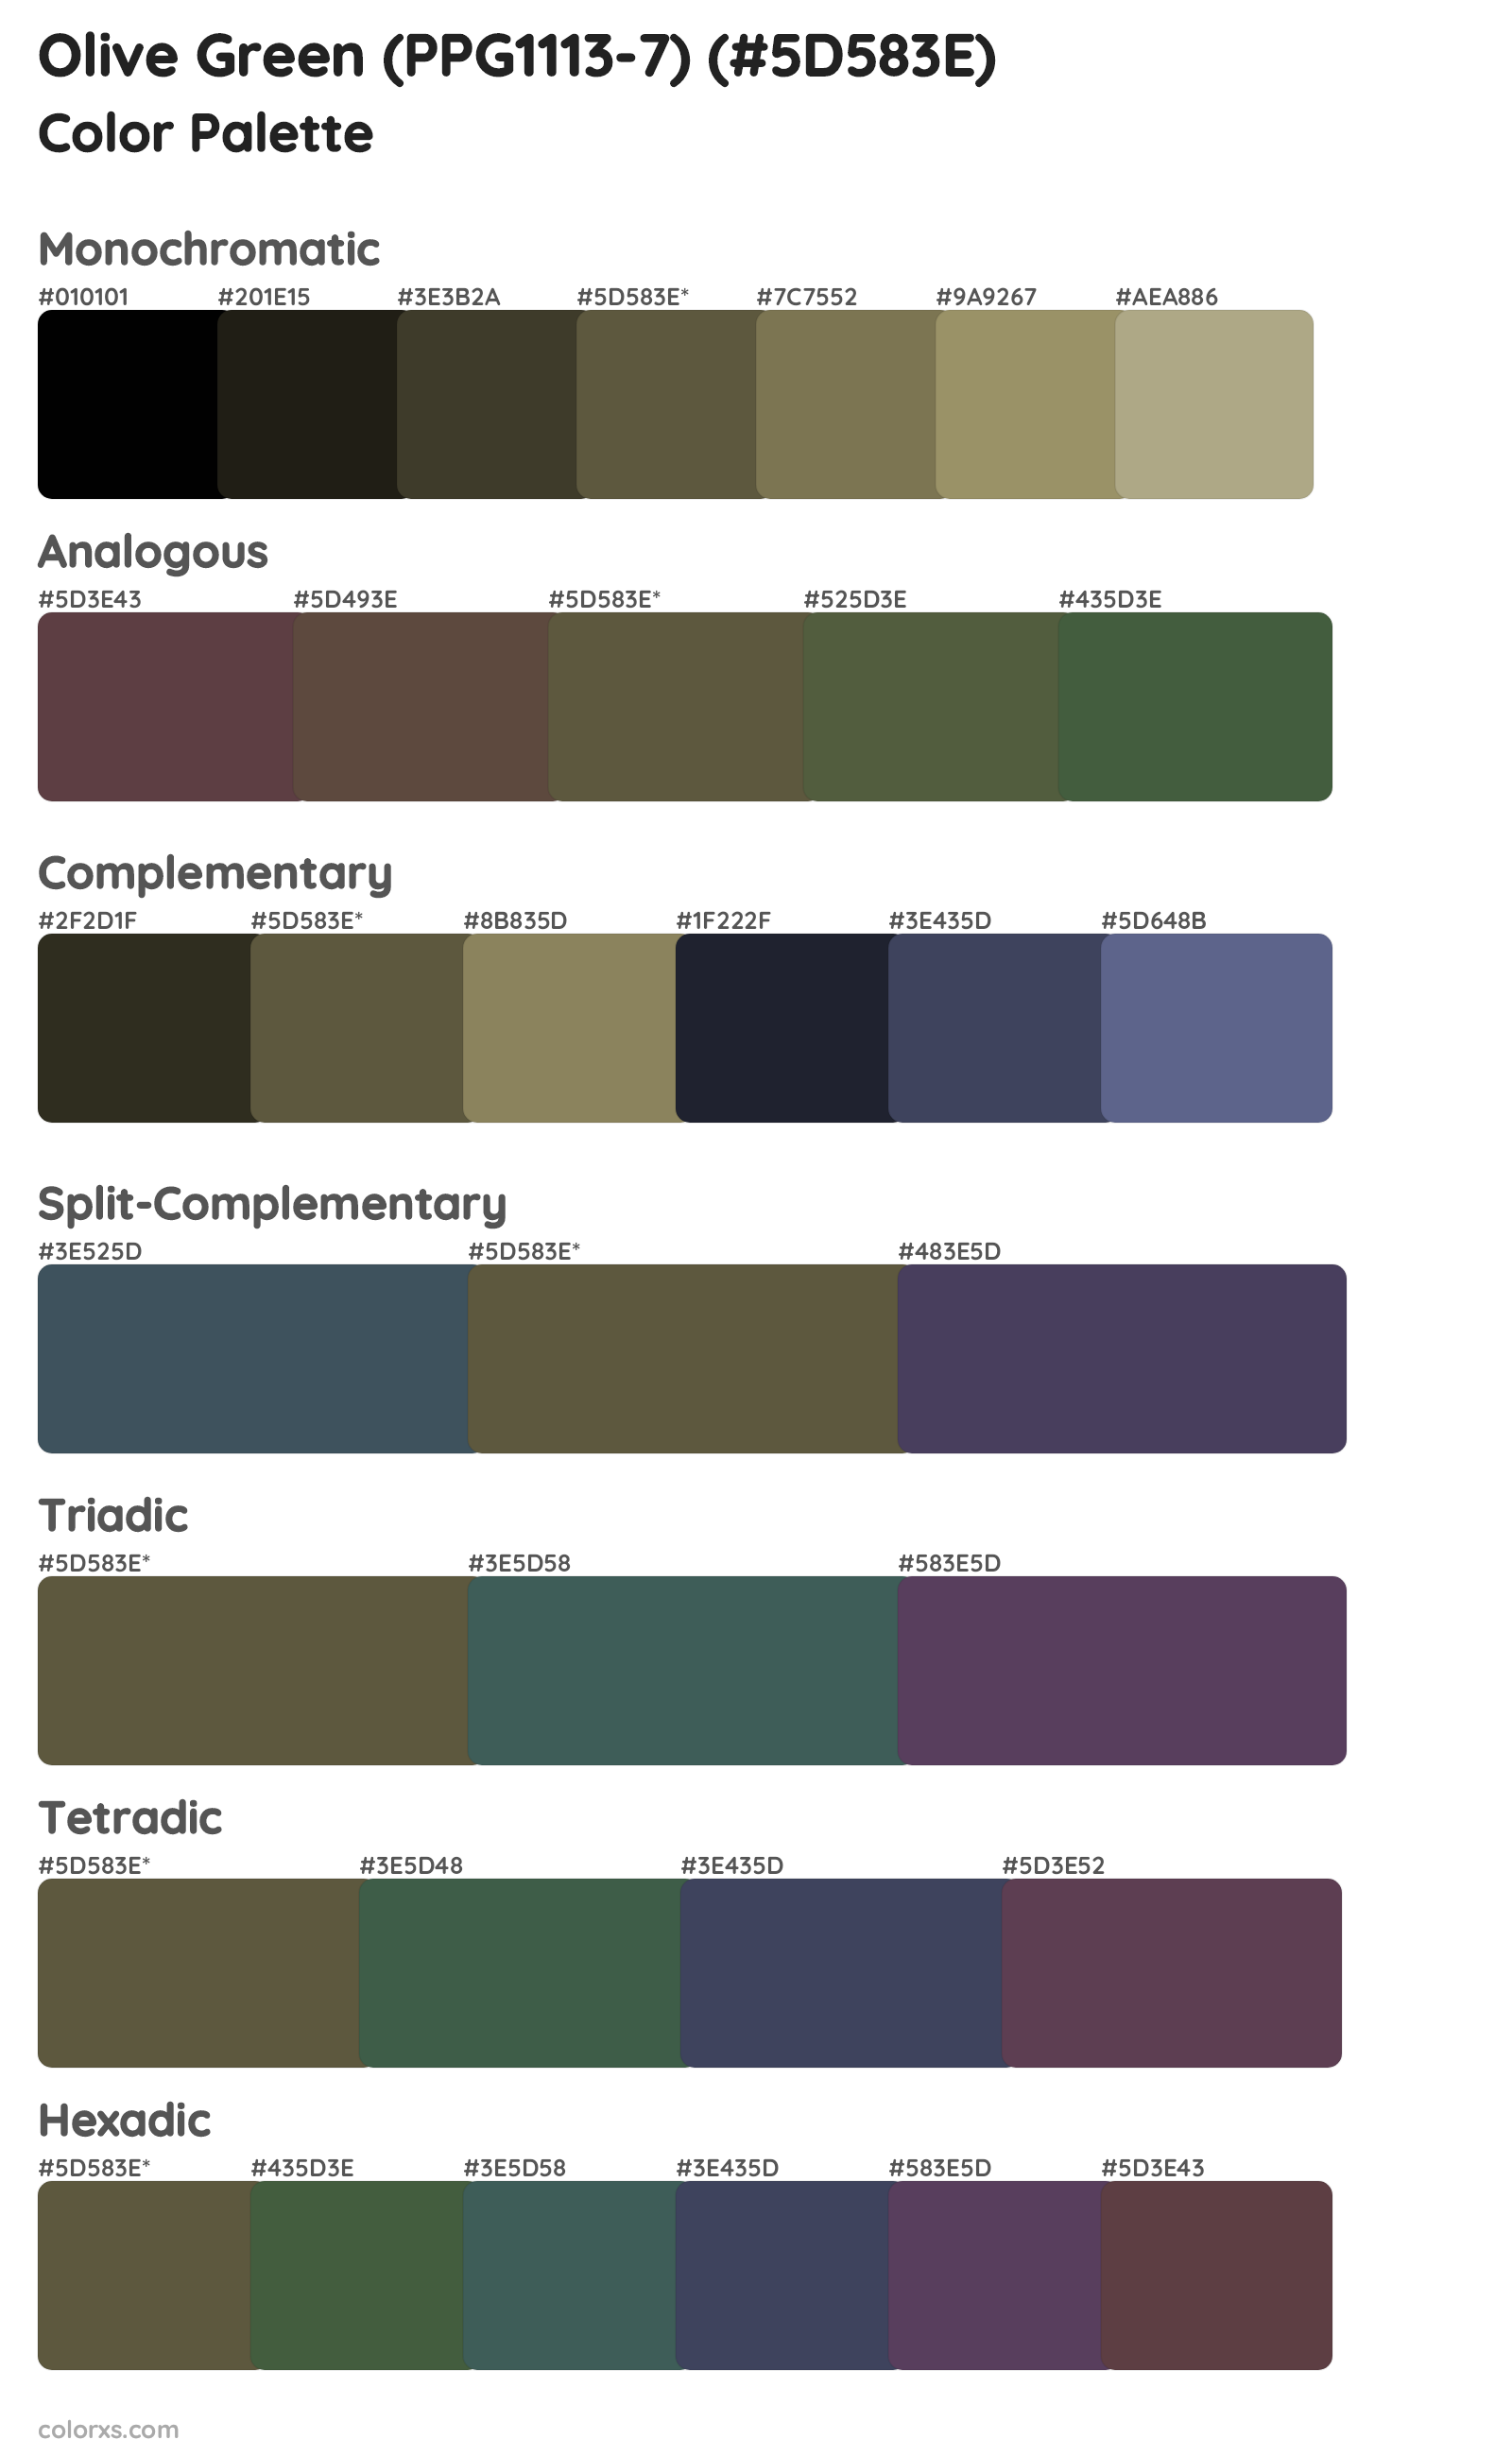 Olive Green (PPG1113-7) Color Scheme Palettes